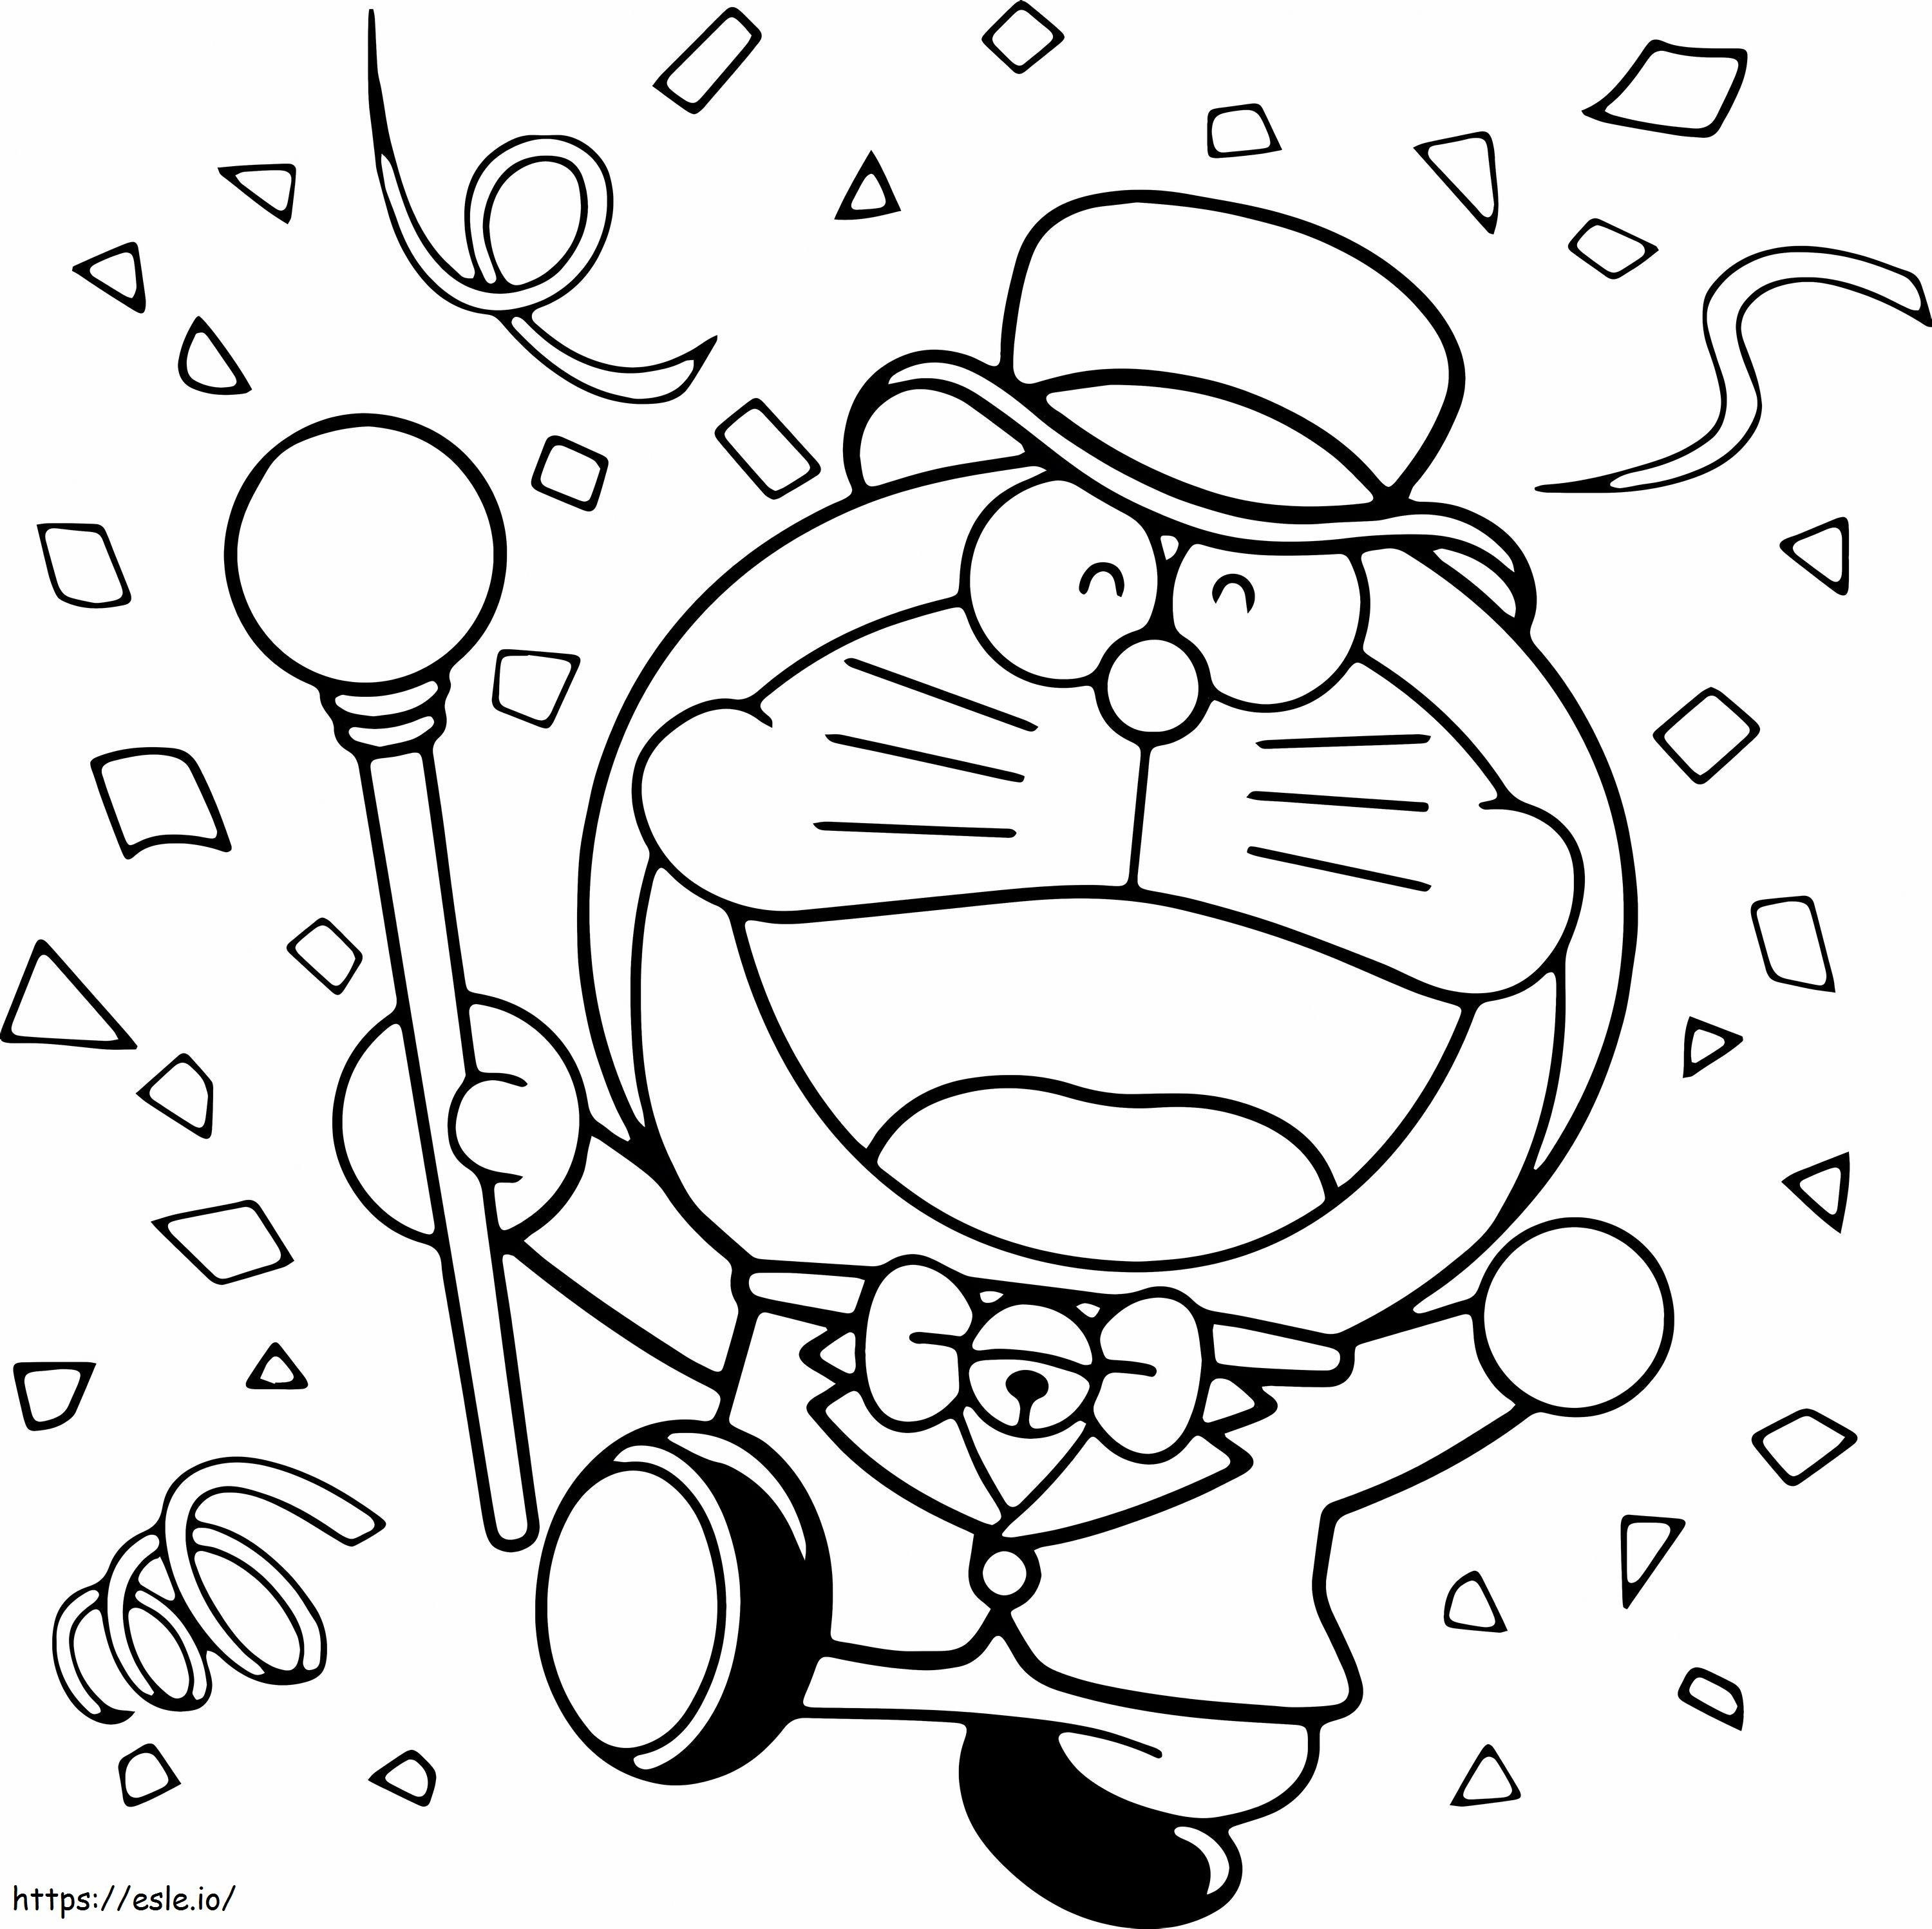 Coloriage 1531275589 Magicien Doraemon A4 à imprimer dessin